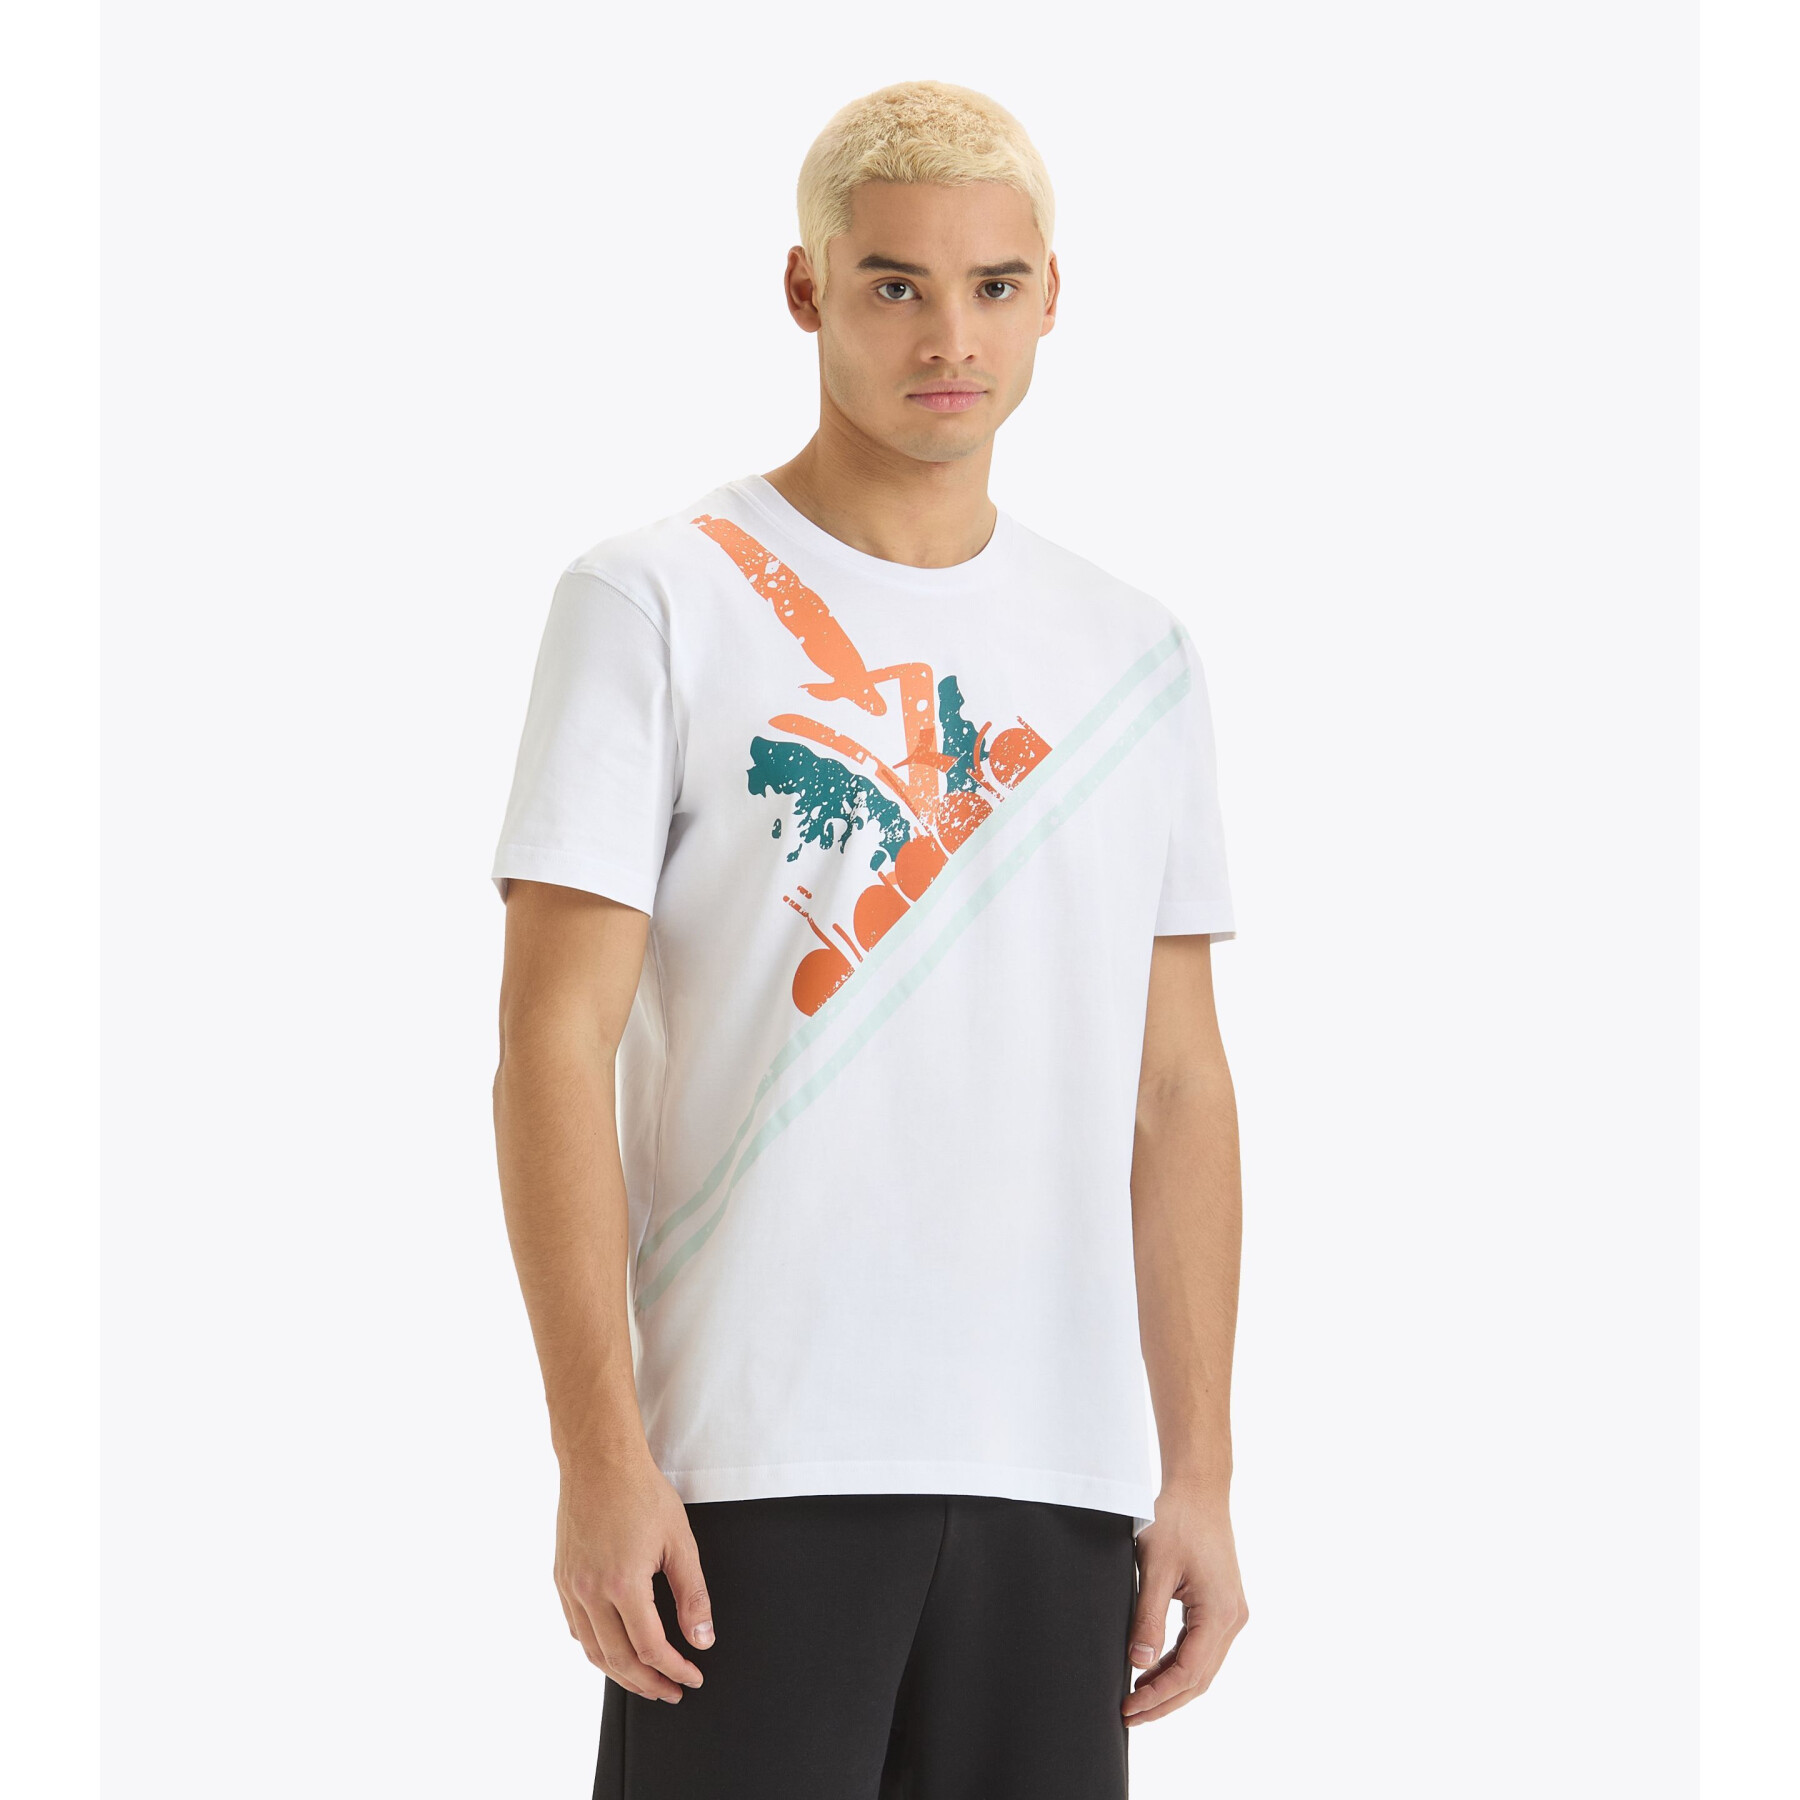 T-shirt Diadora Tennis 90